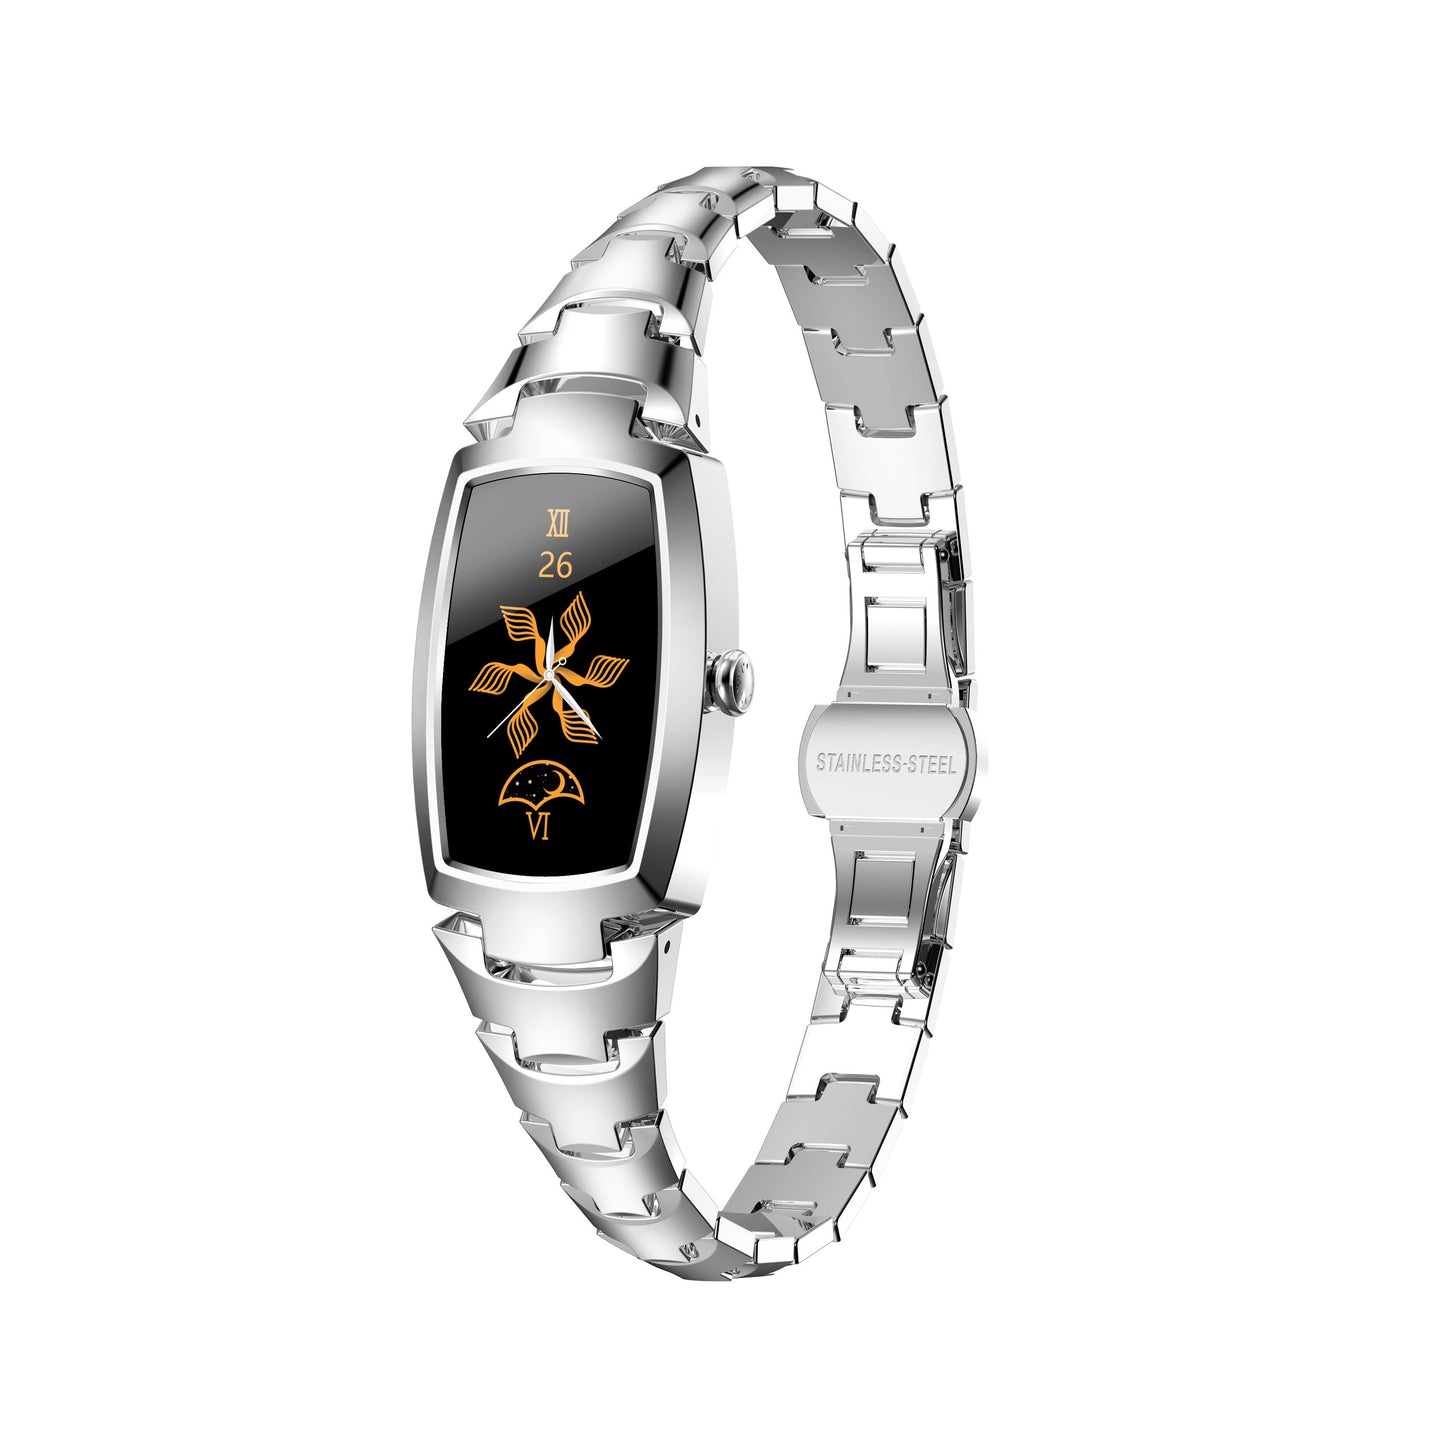 Elegance Pro Smart Watch